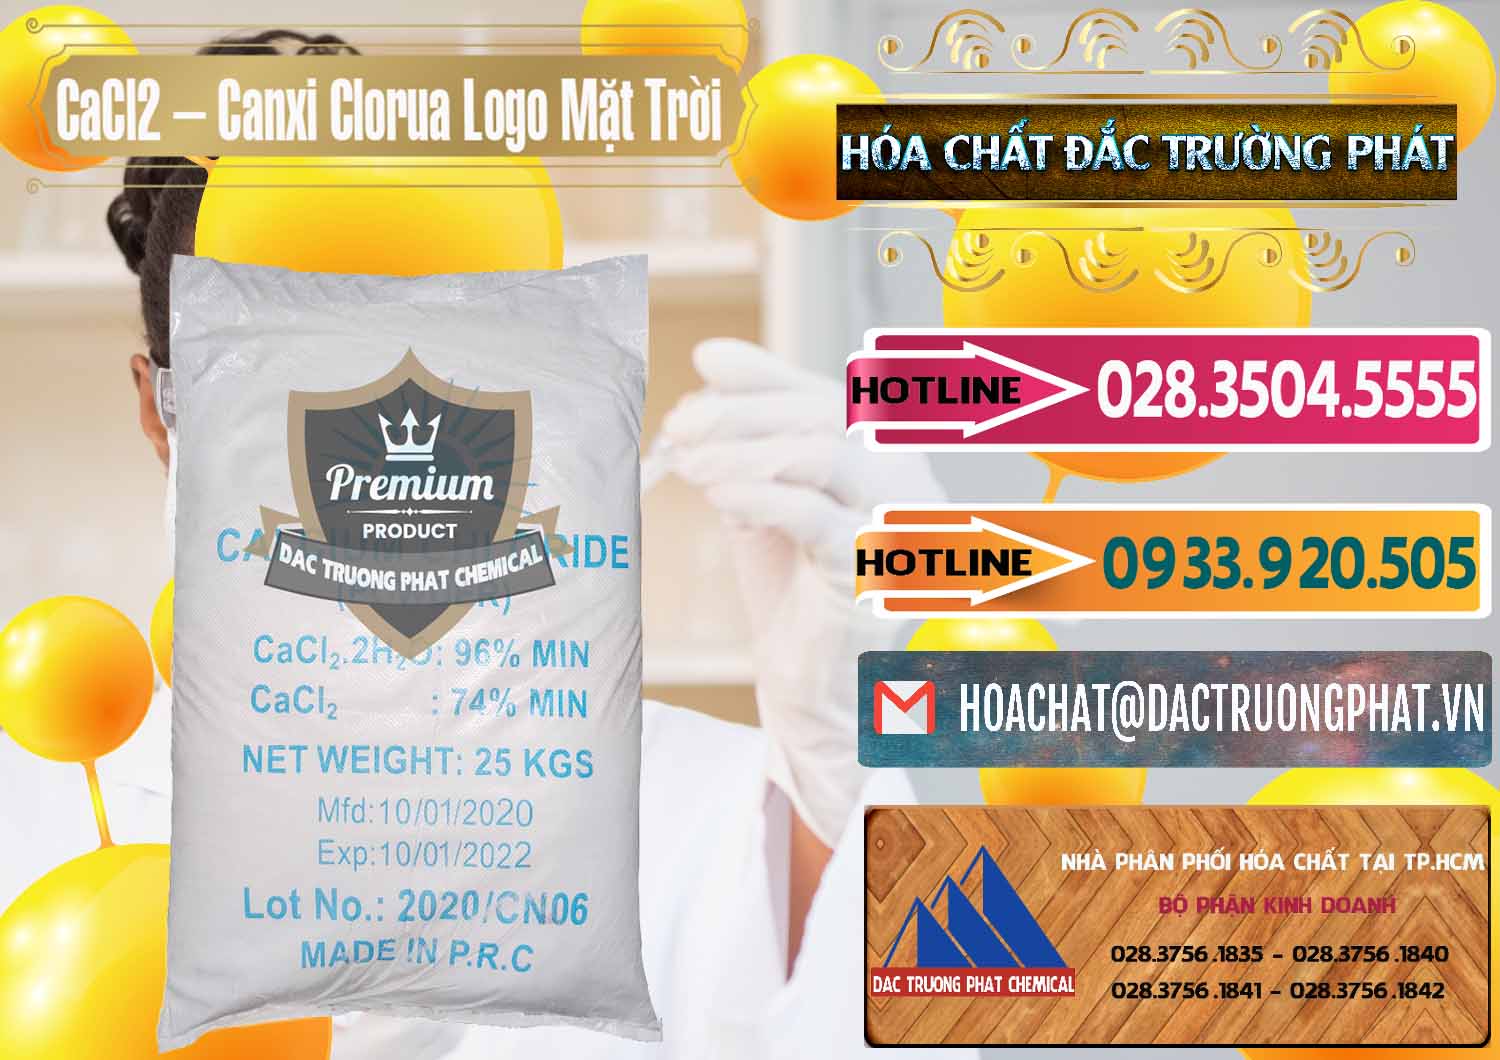 Cung cấp & bán CaCl2 – Canxi Clorua 96% Logo Mặt Trời Trung Quốc China - 0041 - Chuyên kinh doanh _ phân phối hóa chất tại TP.HCM - dactruongphat.vn